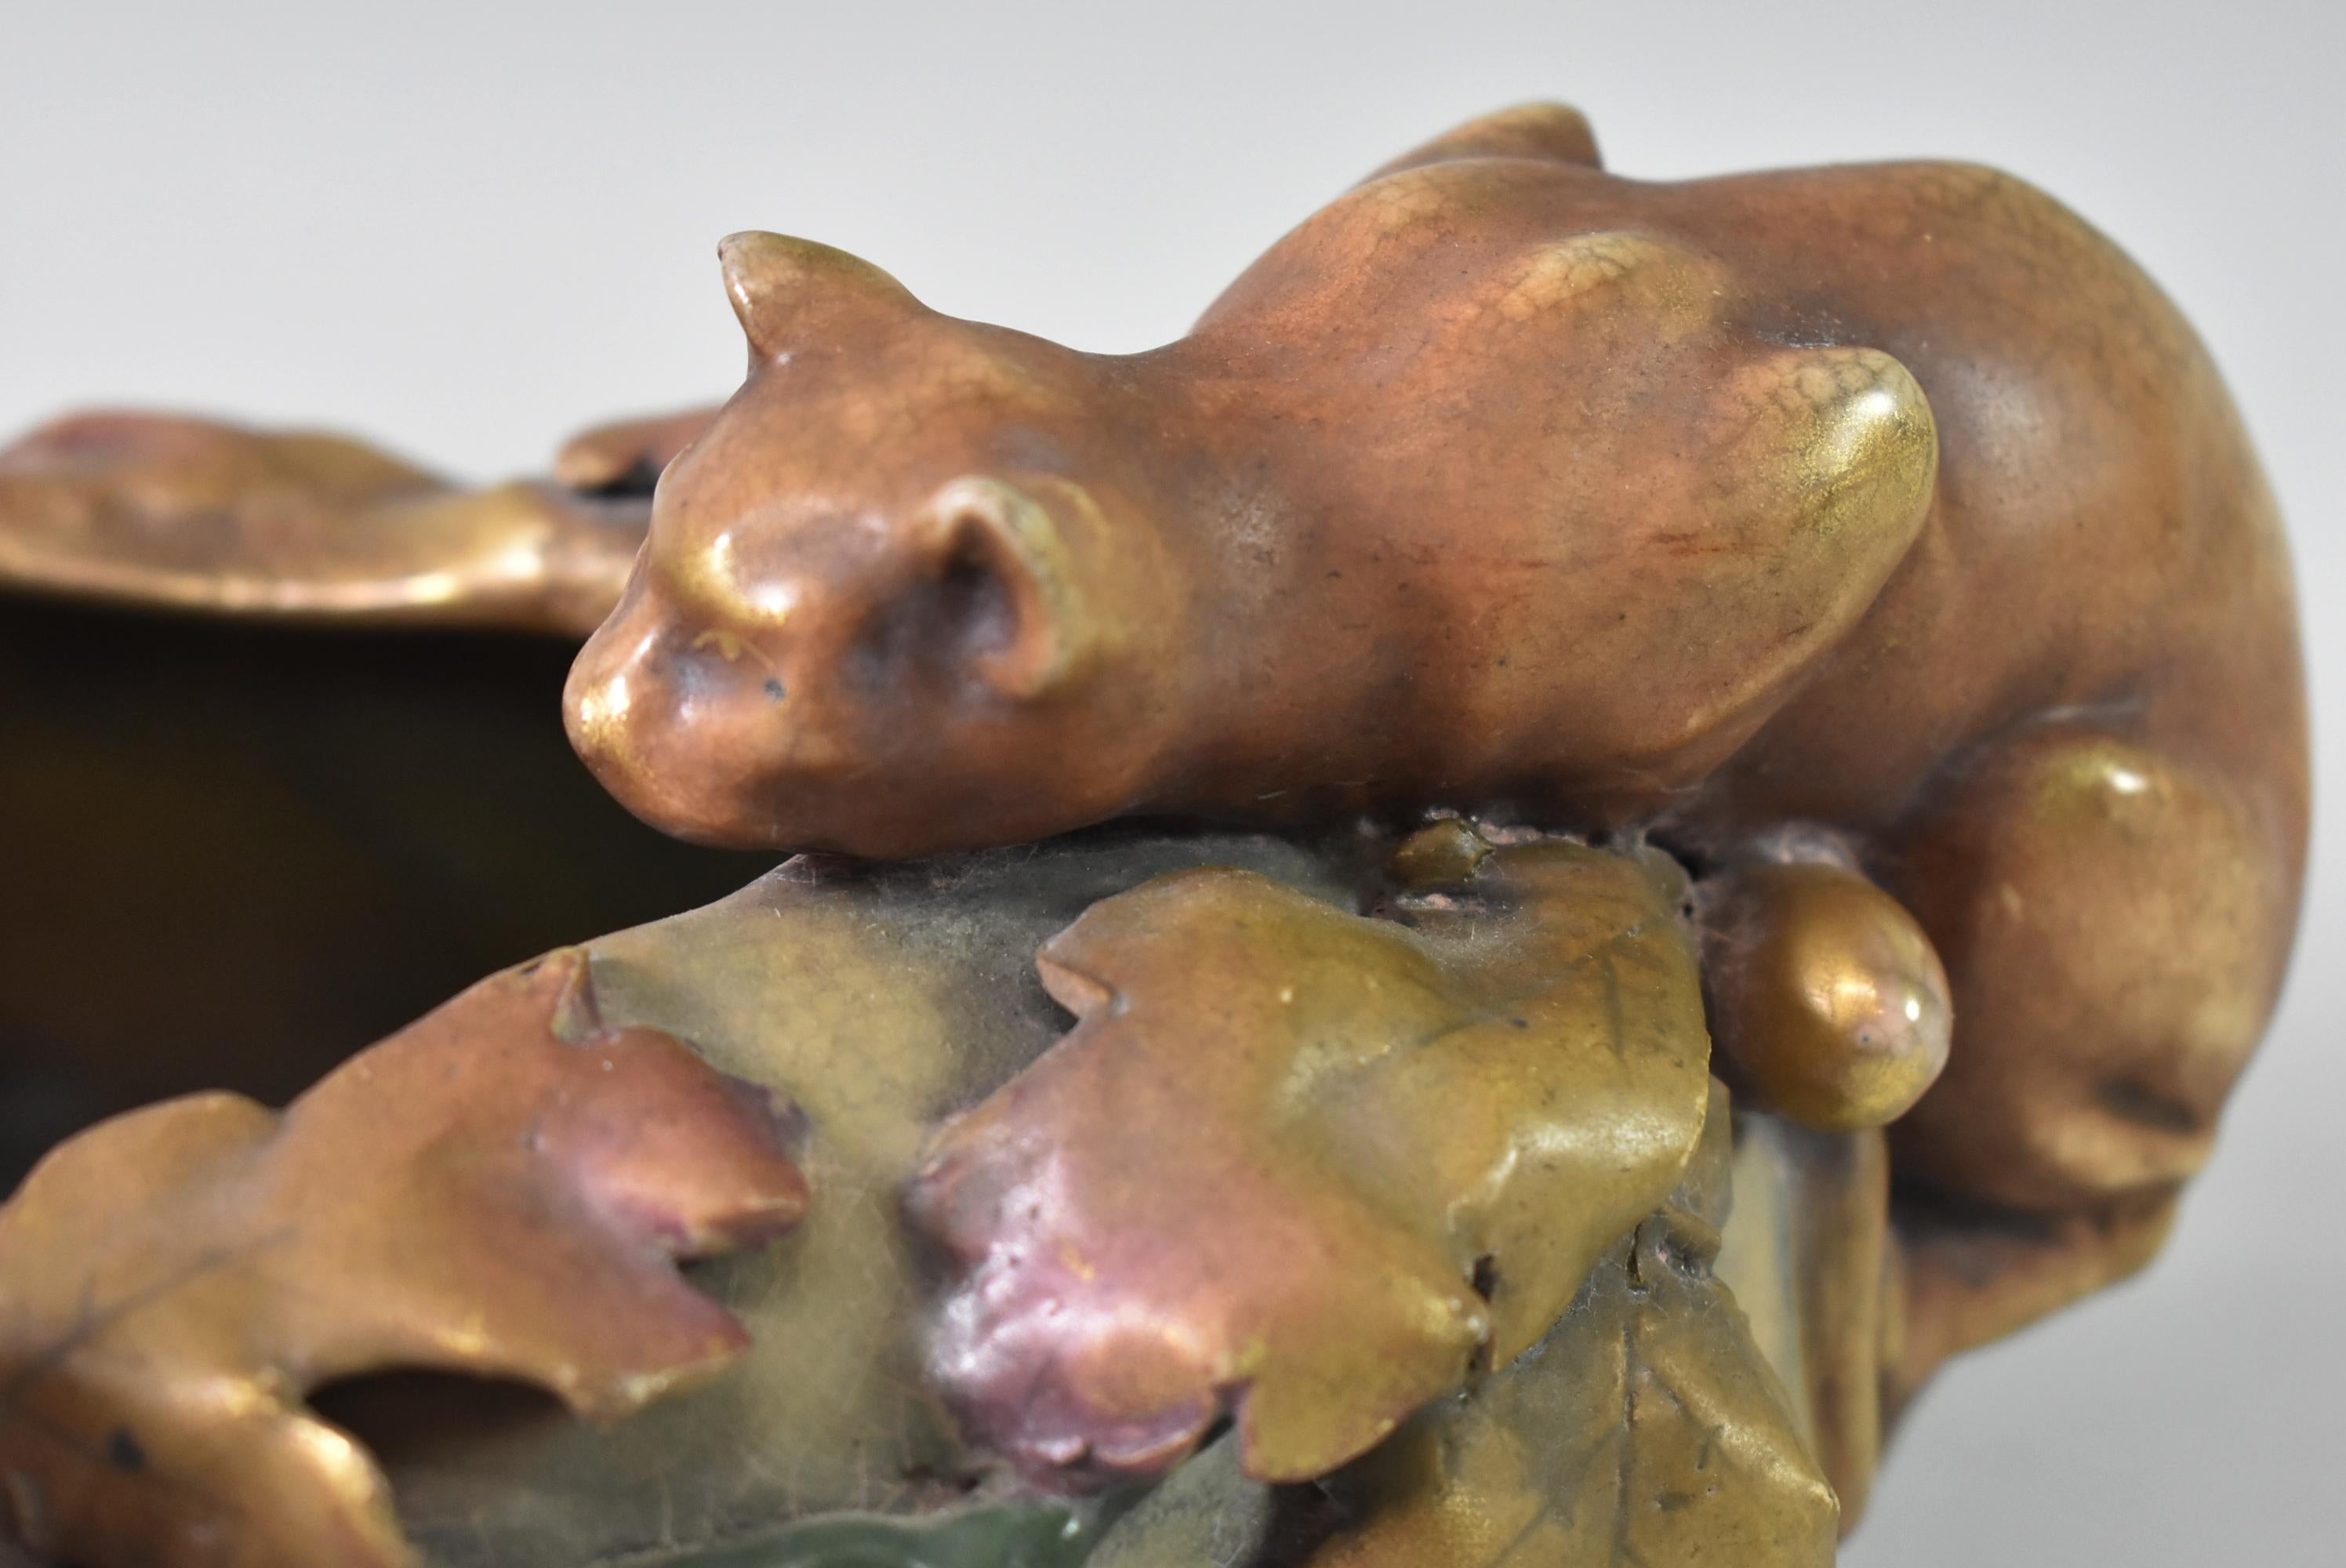 Amphora Katze und Maus Porzellan ovale Schale. Verziert mit Eichel und Eichenlaub. Gestempelte Amphora. Keine Beschädigung leichte Rissbildung.